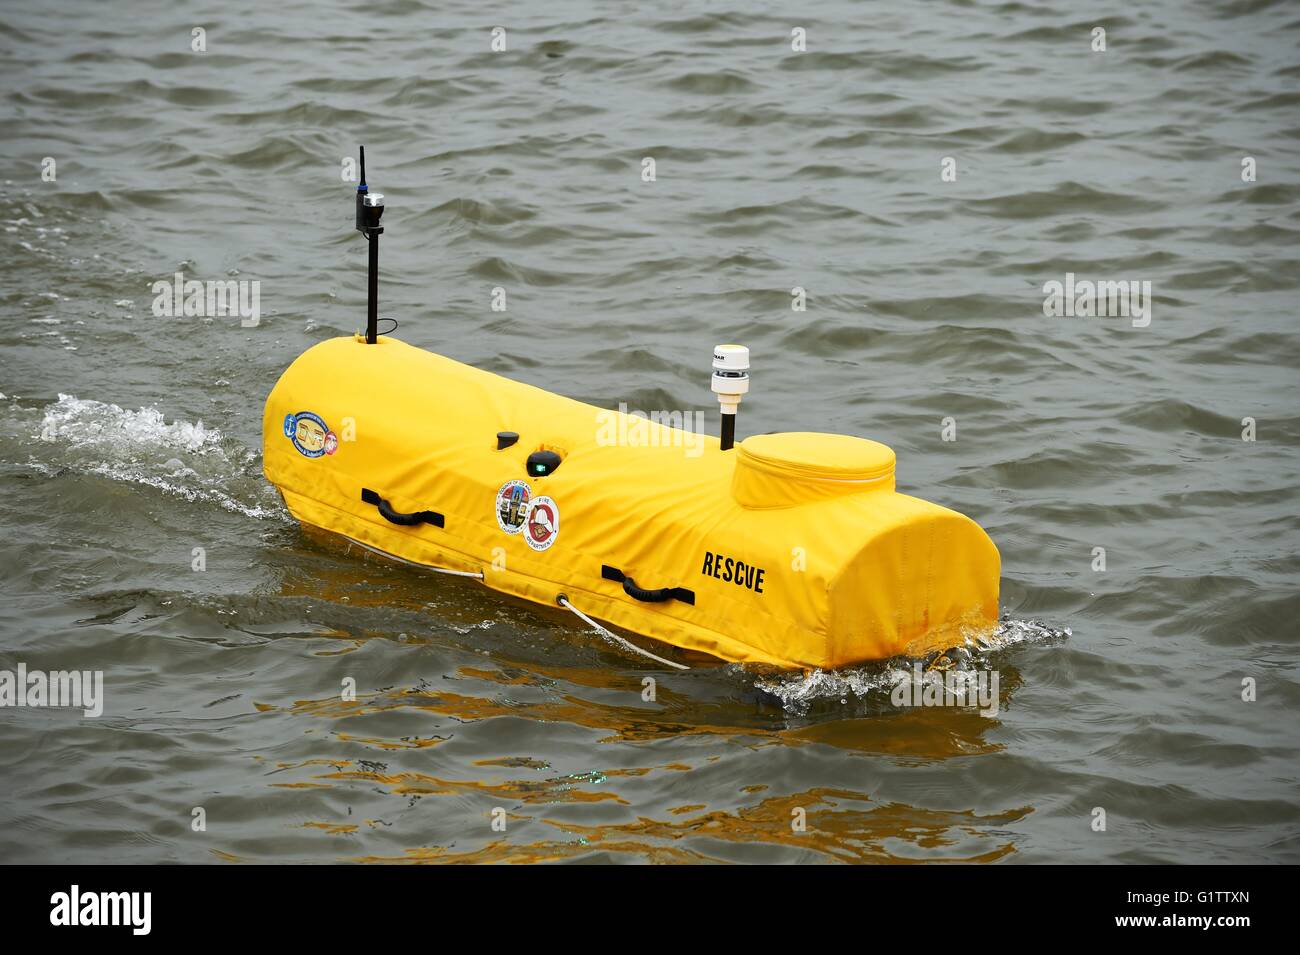 Una boya móvil autónomo está demostrada en el National Harbor durante el 2016 Sea-Air-Space Exposición, 18 de mayo de 2016 en Baltimore, Maryland. La Oficina de Investigaciones Navales desarrolló el dispositivo robótico de rescate. Foto de stock